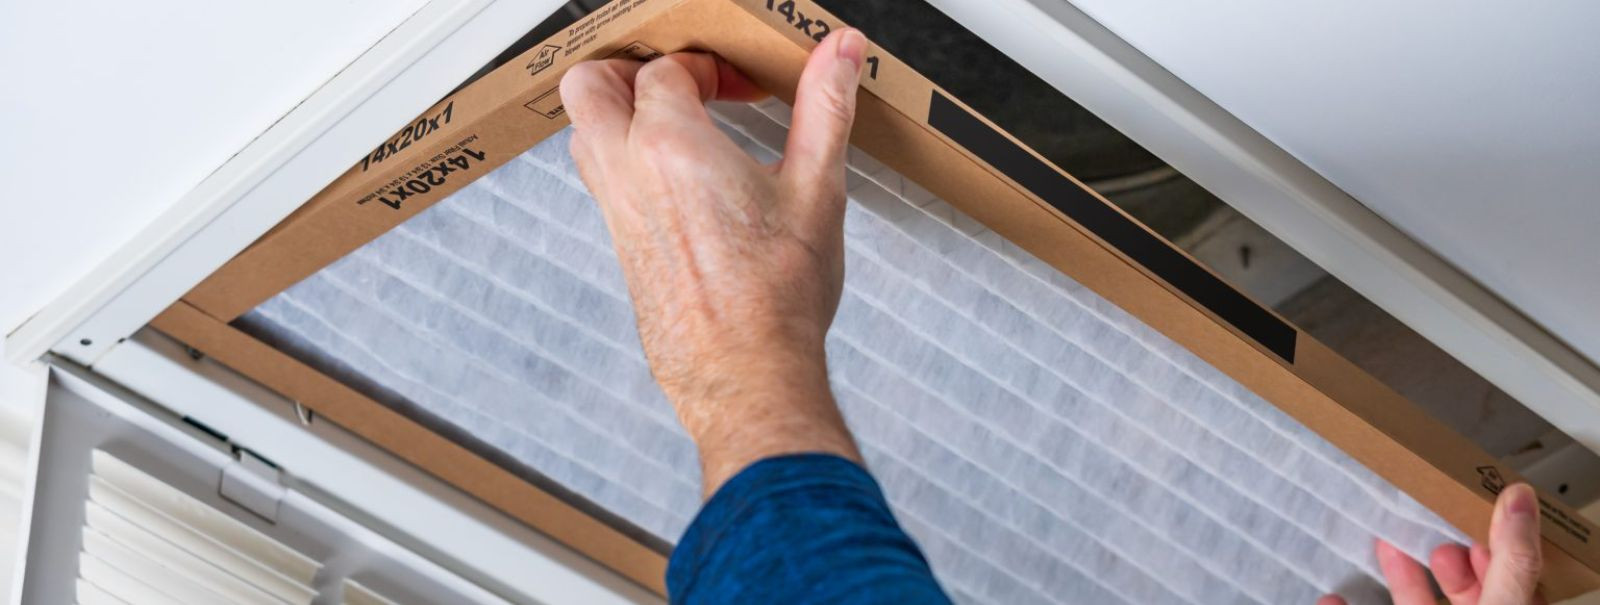 Kui Teil on kodus või töökohas ventilatsioonisüsteem, siis on oluline meeles pidada, et see vajab korrapärast hooldust, et tagada selle optimaalne toimimine. Õh